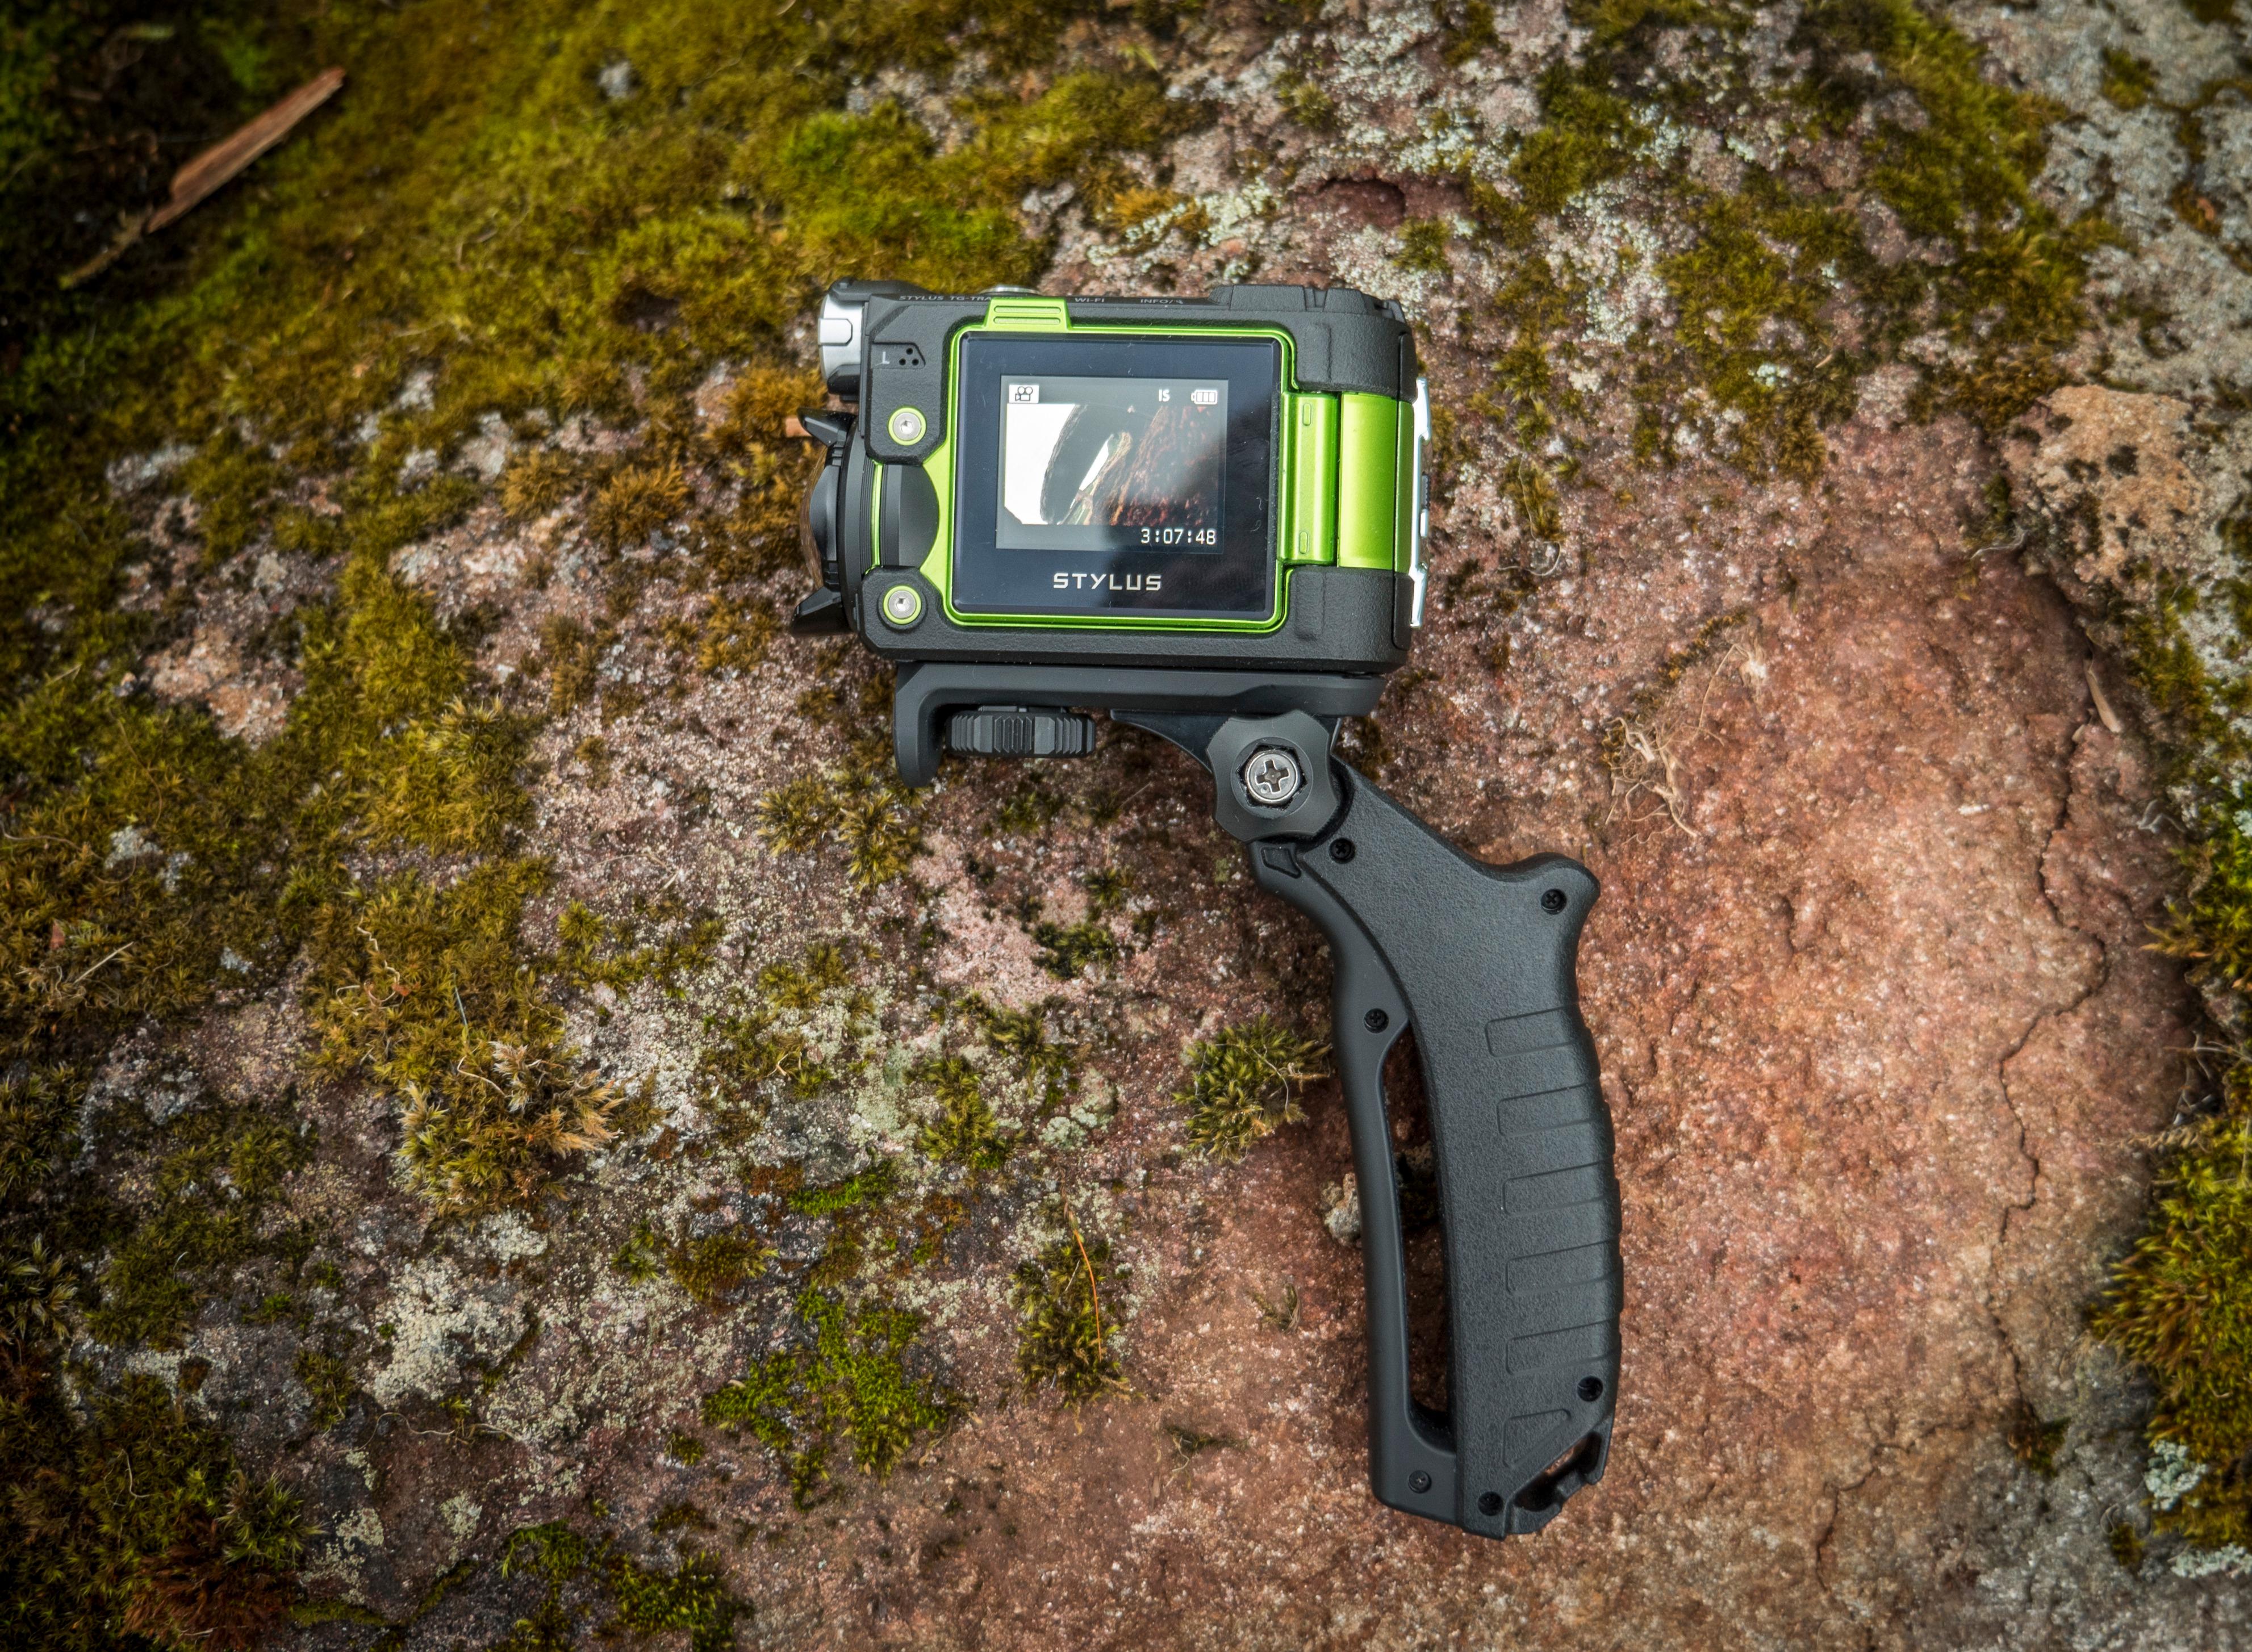 TG-Tracker kommer med et pistolgrep som gjør det lettere å filme håndholdt. Kameraet skiller seg ut med å ha en innebygget LED-lykt, men denne funksjonen kan vi gi hvilket som helst actionkamera med en hodelykt og gaffatape, og derfor har vi ikke vektlagt det noe i testen.